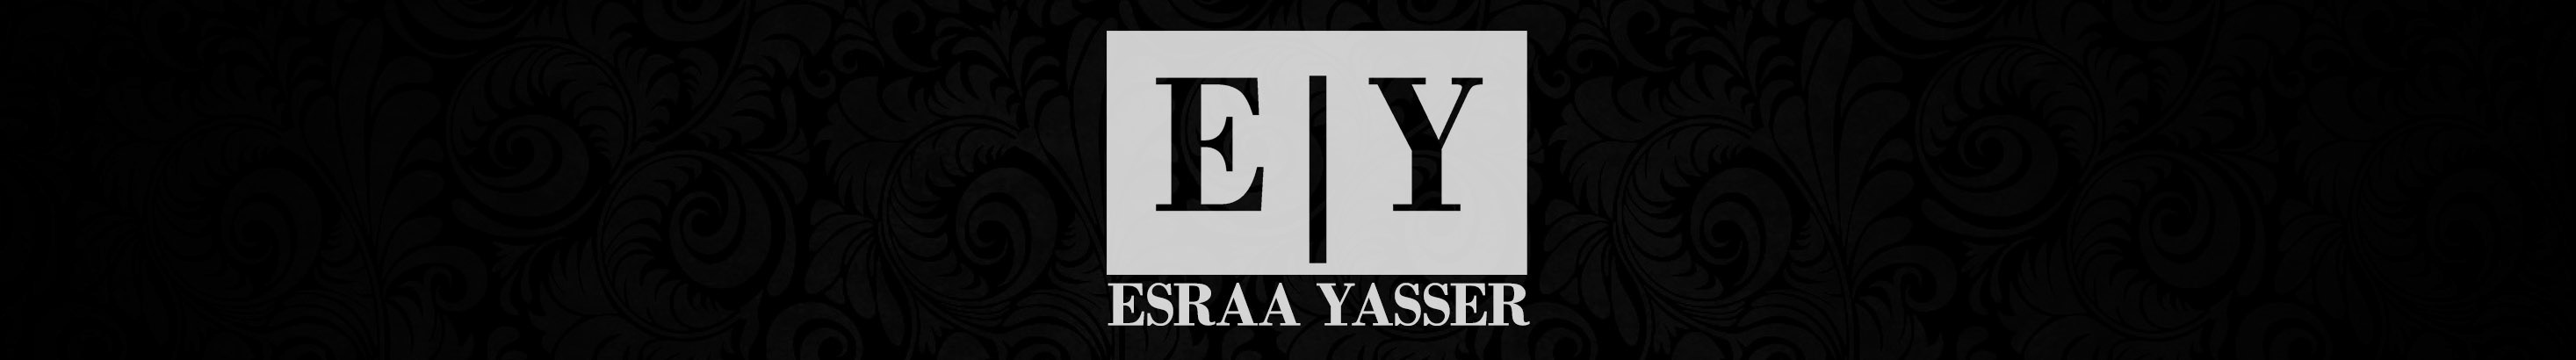 Profil-Banner von Esraa Yasser